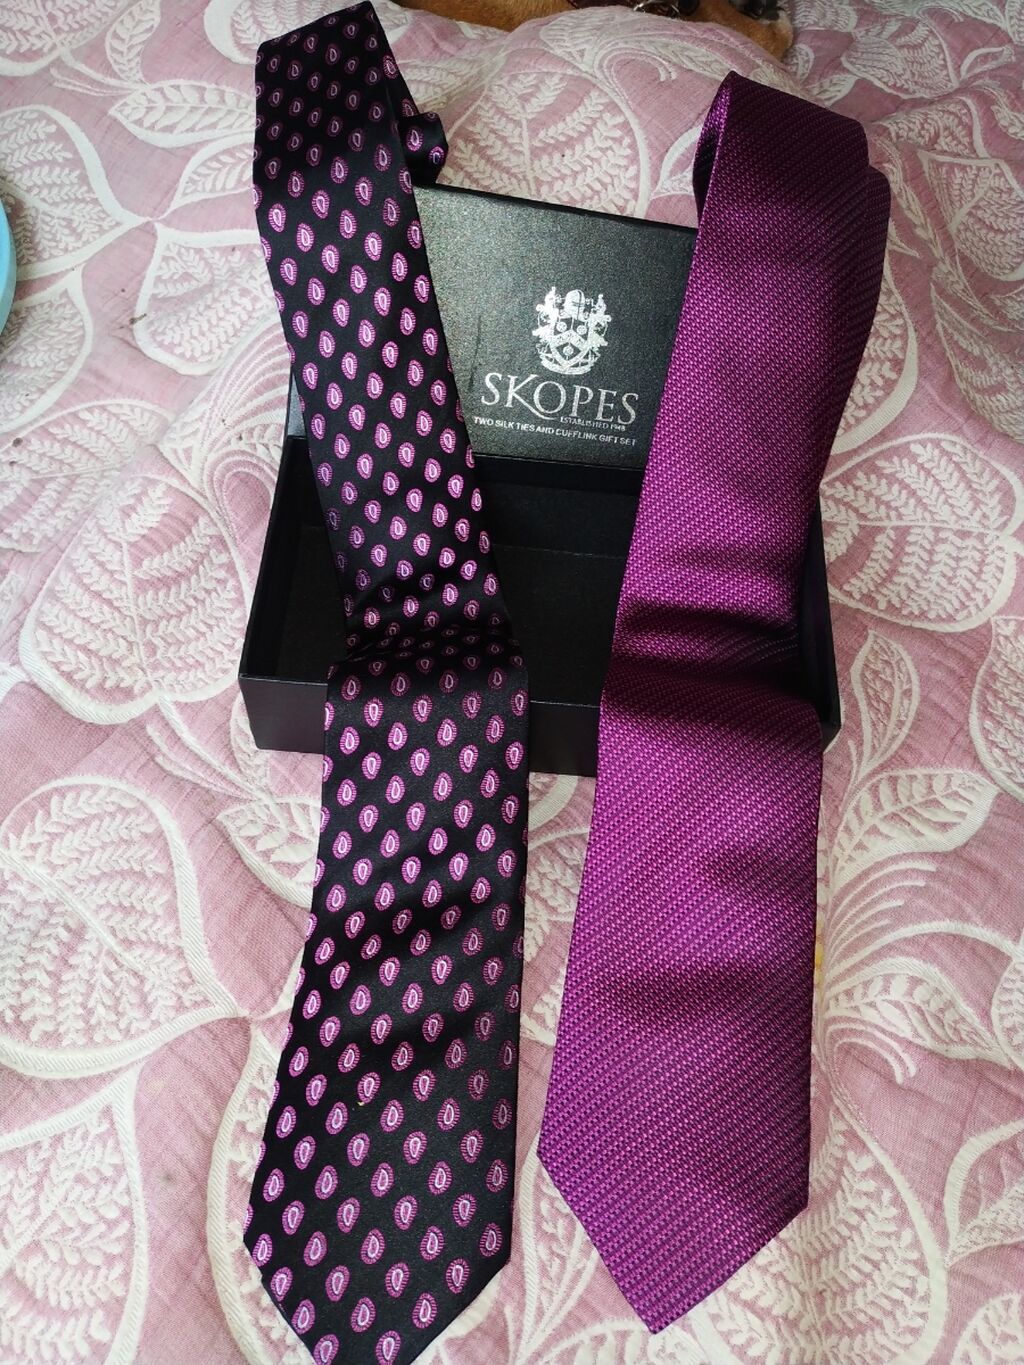 Продаю галстуки.
Цена за два 1000 KGS | Объявление создано 09 Апрель 2022 06:39:23: Продаю галстуки.
Цена за два